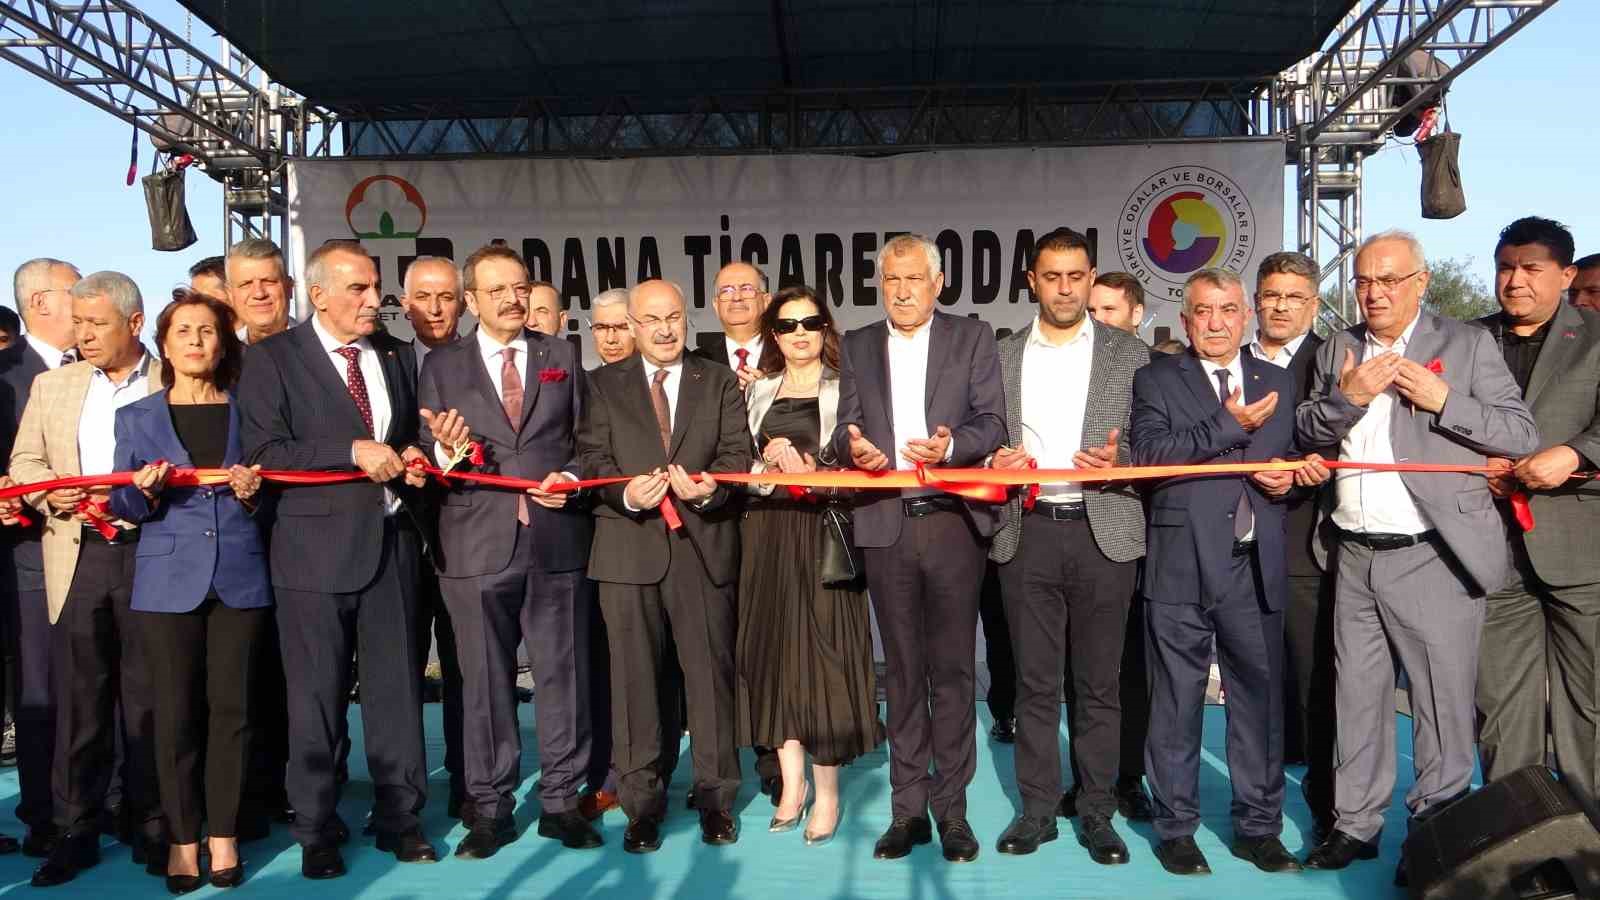 TOBB Başkanı Hisarcıklıoğlu: “Dünyadaki durgunluğa rağmen Adana yılın ilk 3 ayında ihracatını yüzde 9 artırdı”